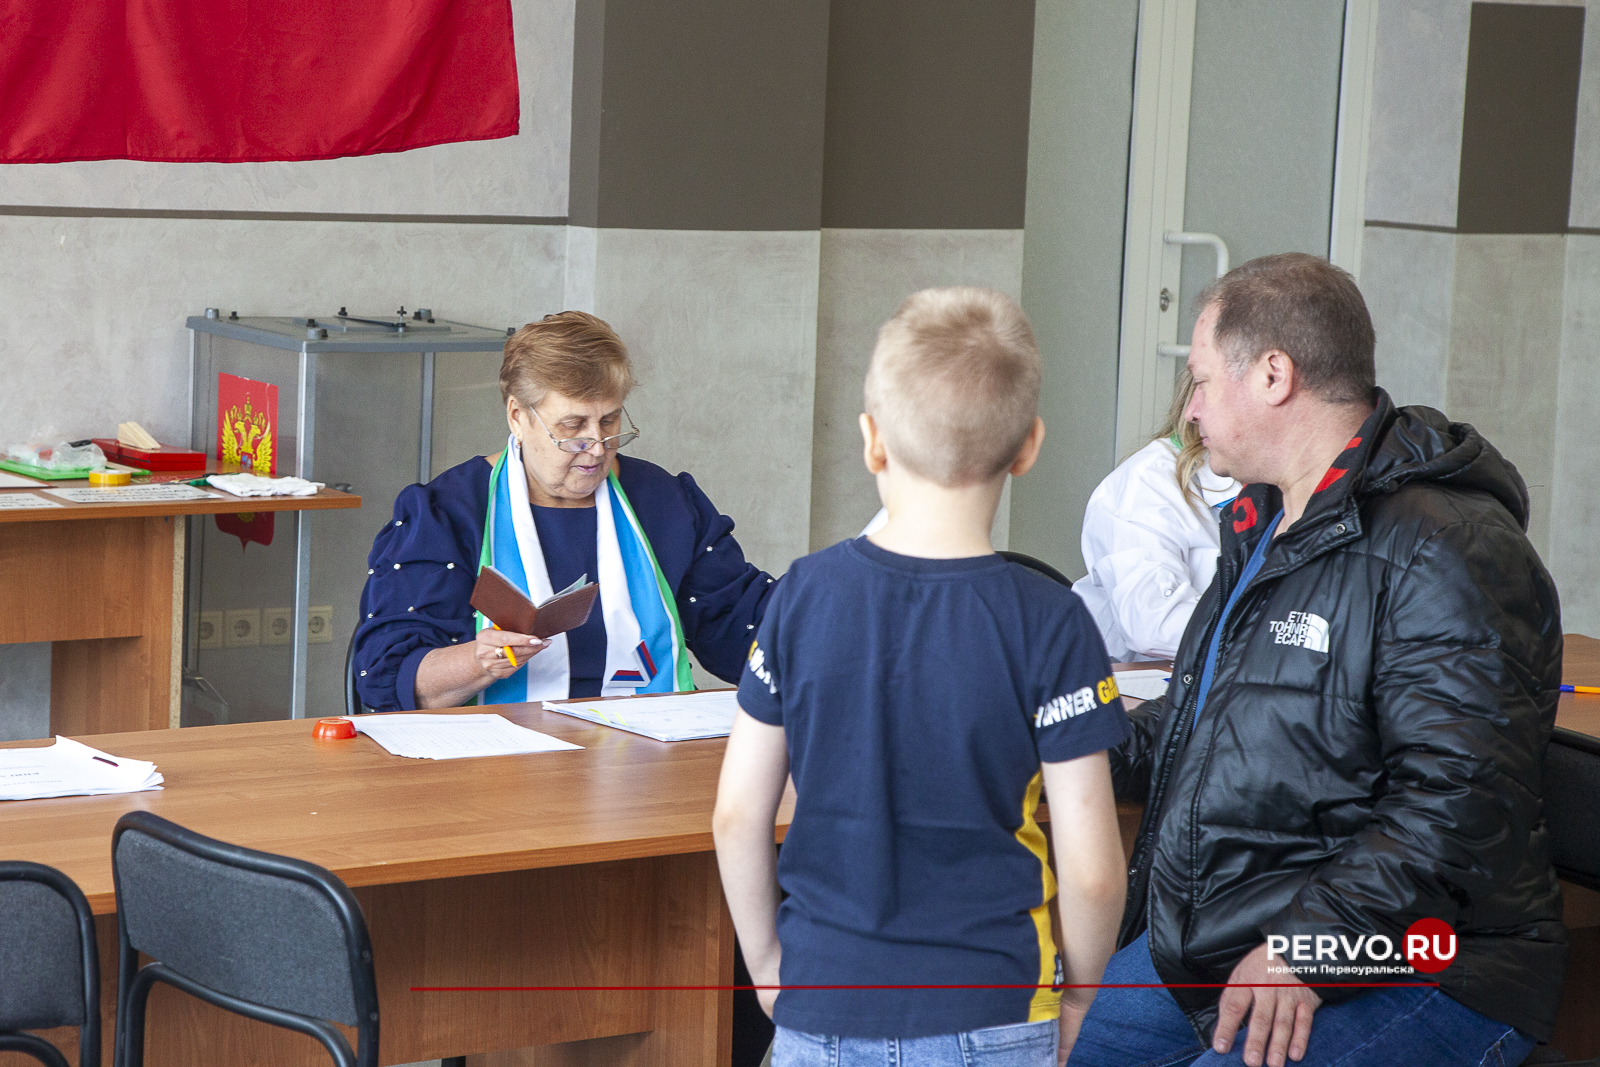 Первоуральцы принимают участие в выборах Президента Российской Федерации семьями – с детьми, внуками, родителями.